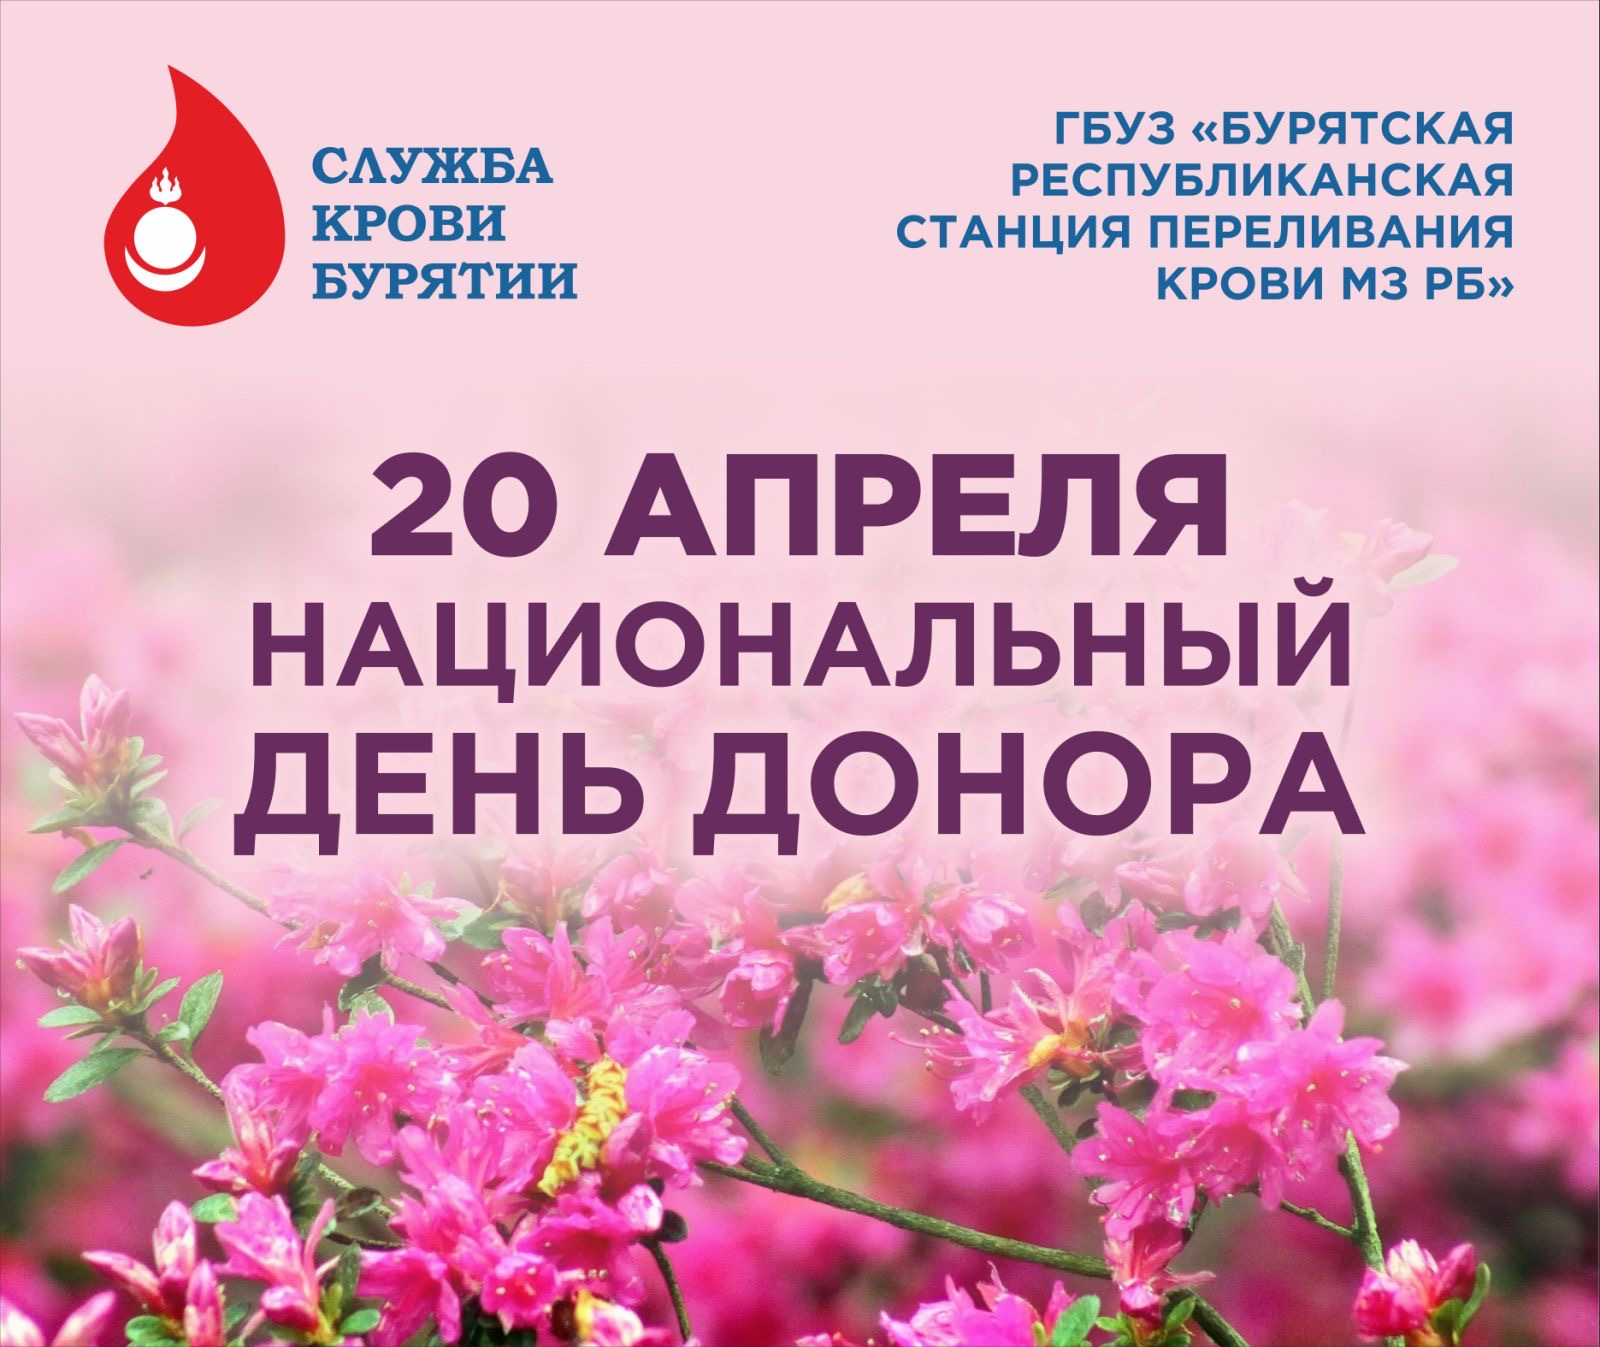 C 15 по 21 апреля 2024 г. проводится Неделя популяризации донорства крови (в честь Дня донора в России 20 апреля).